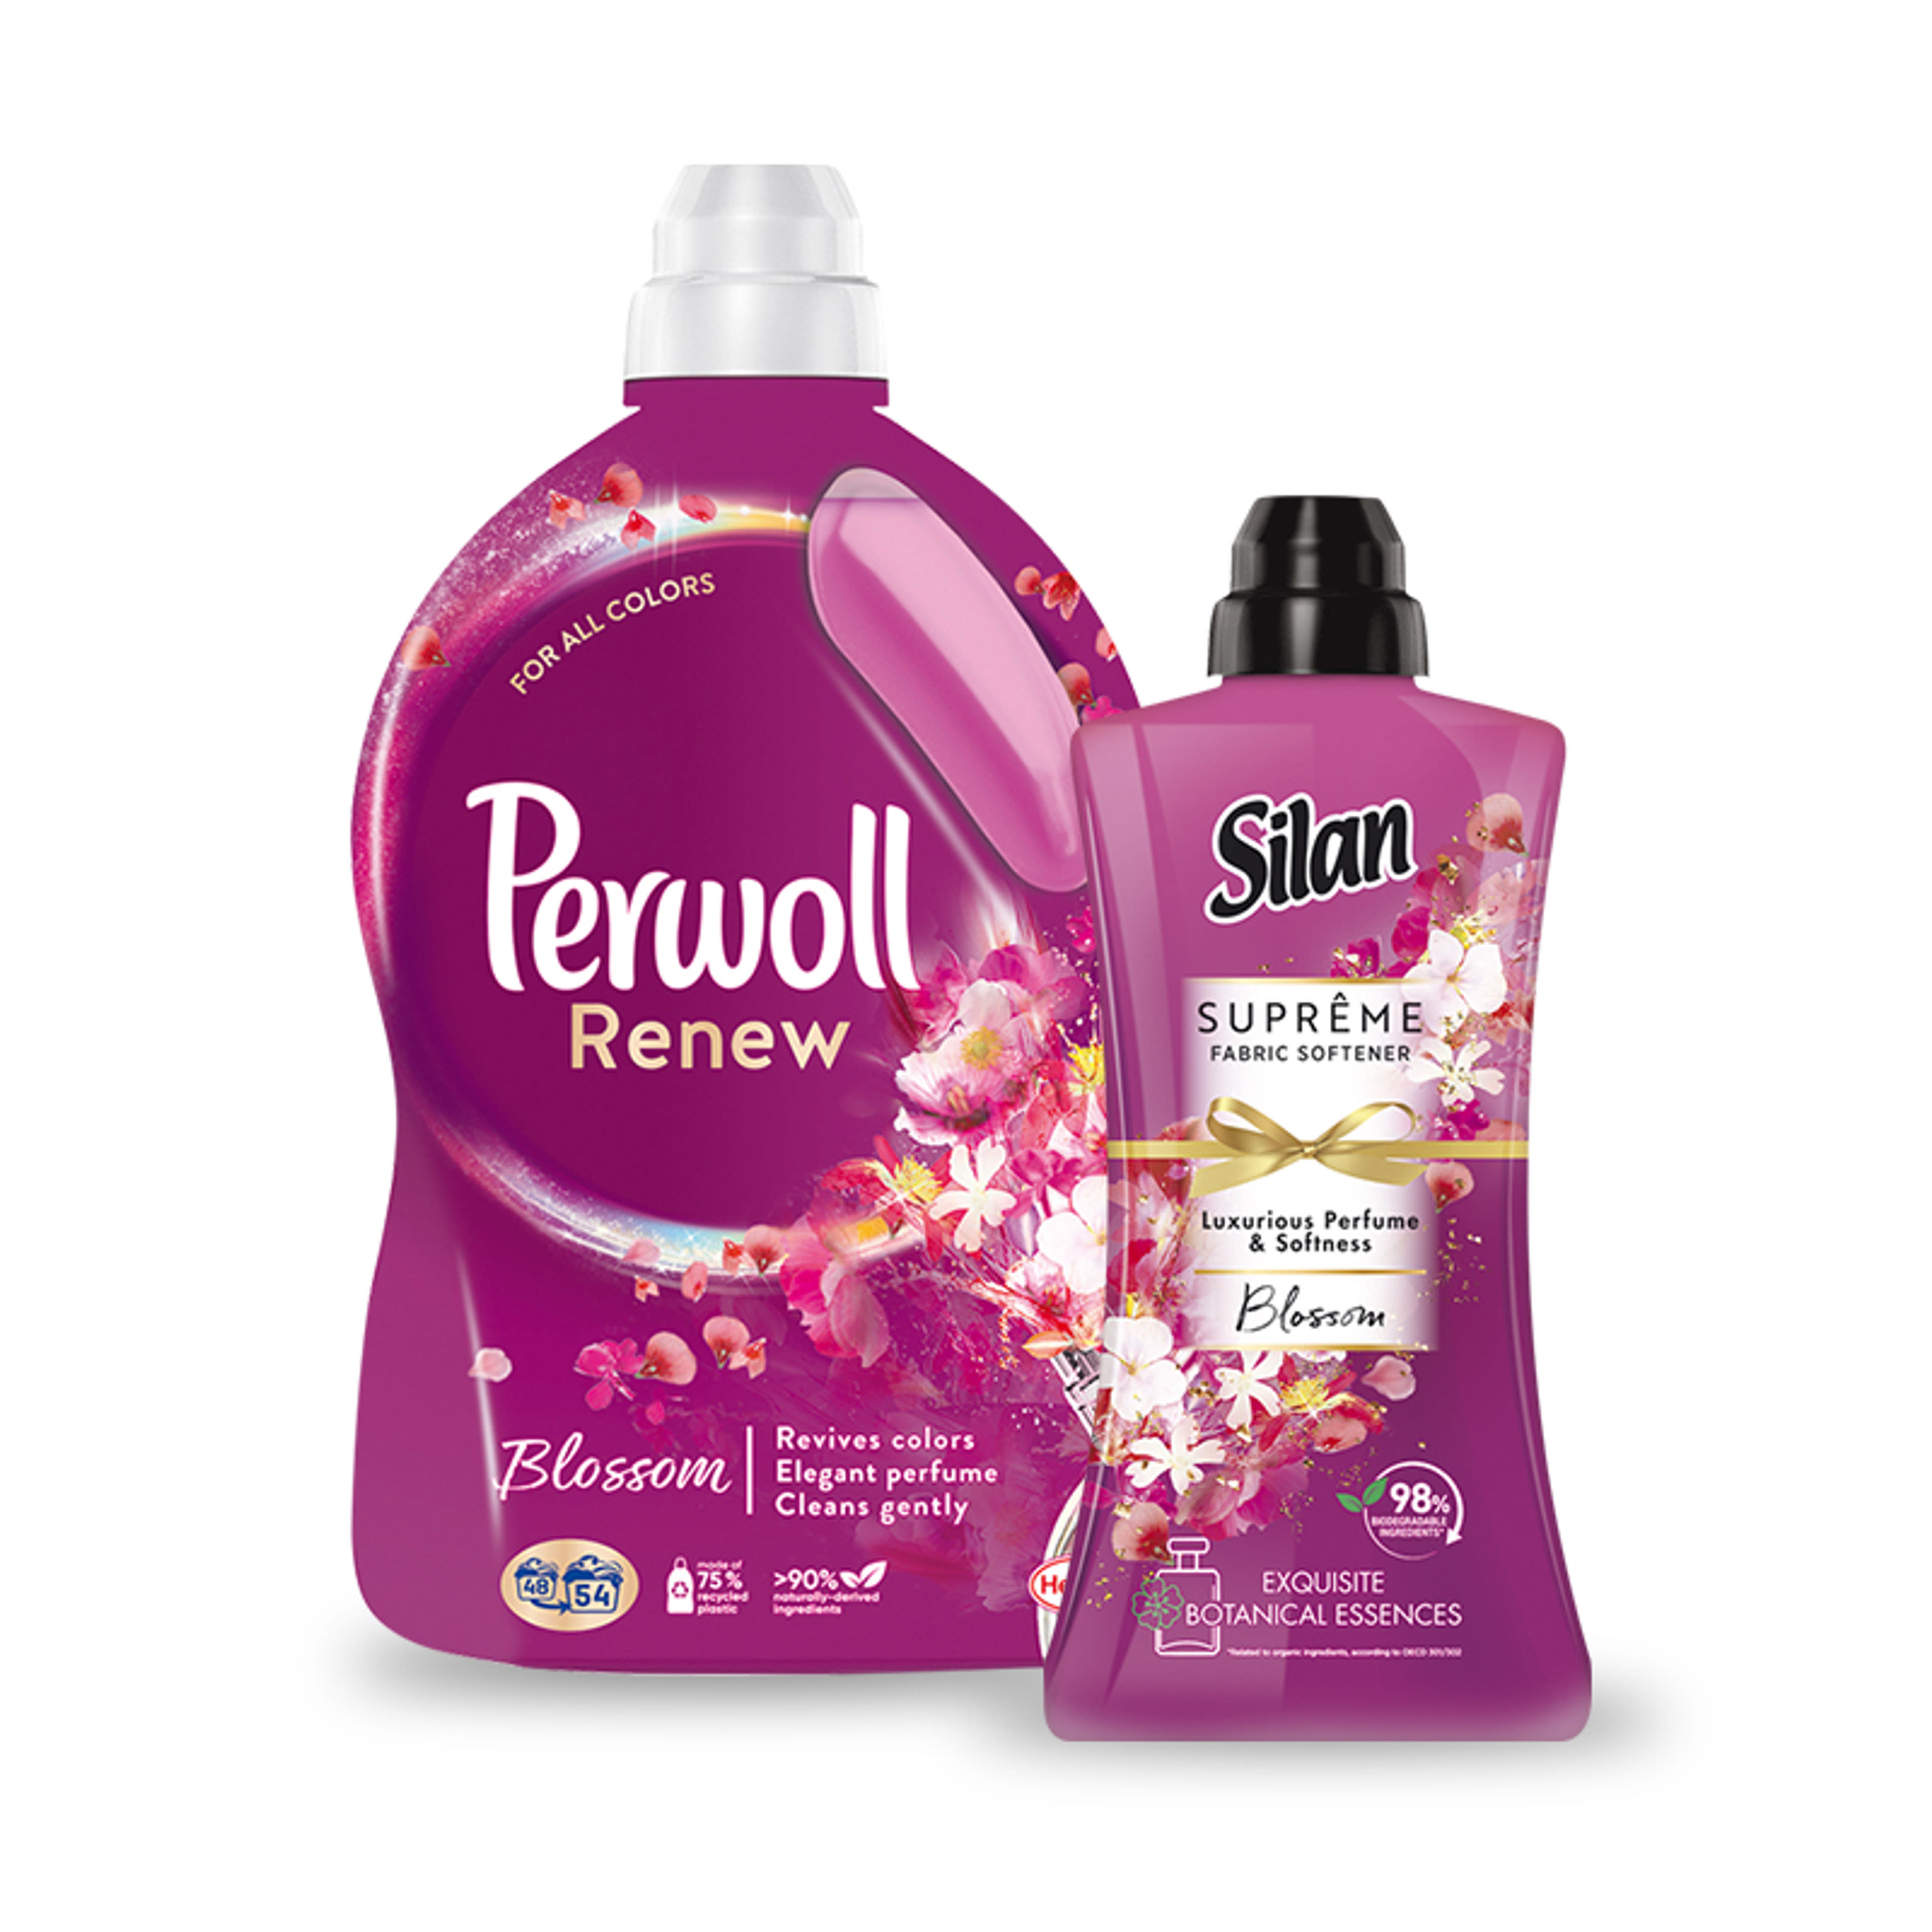 Perwoll Renew Blossom mosószer és Silan Supreme Blossom öblítő csomag